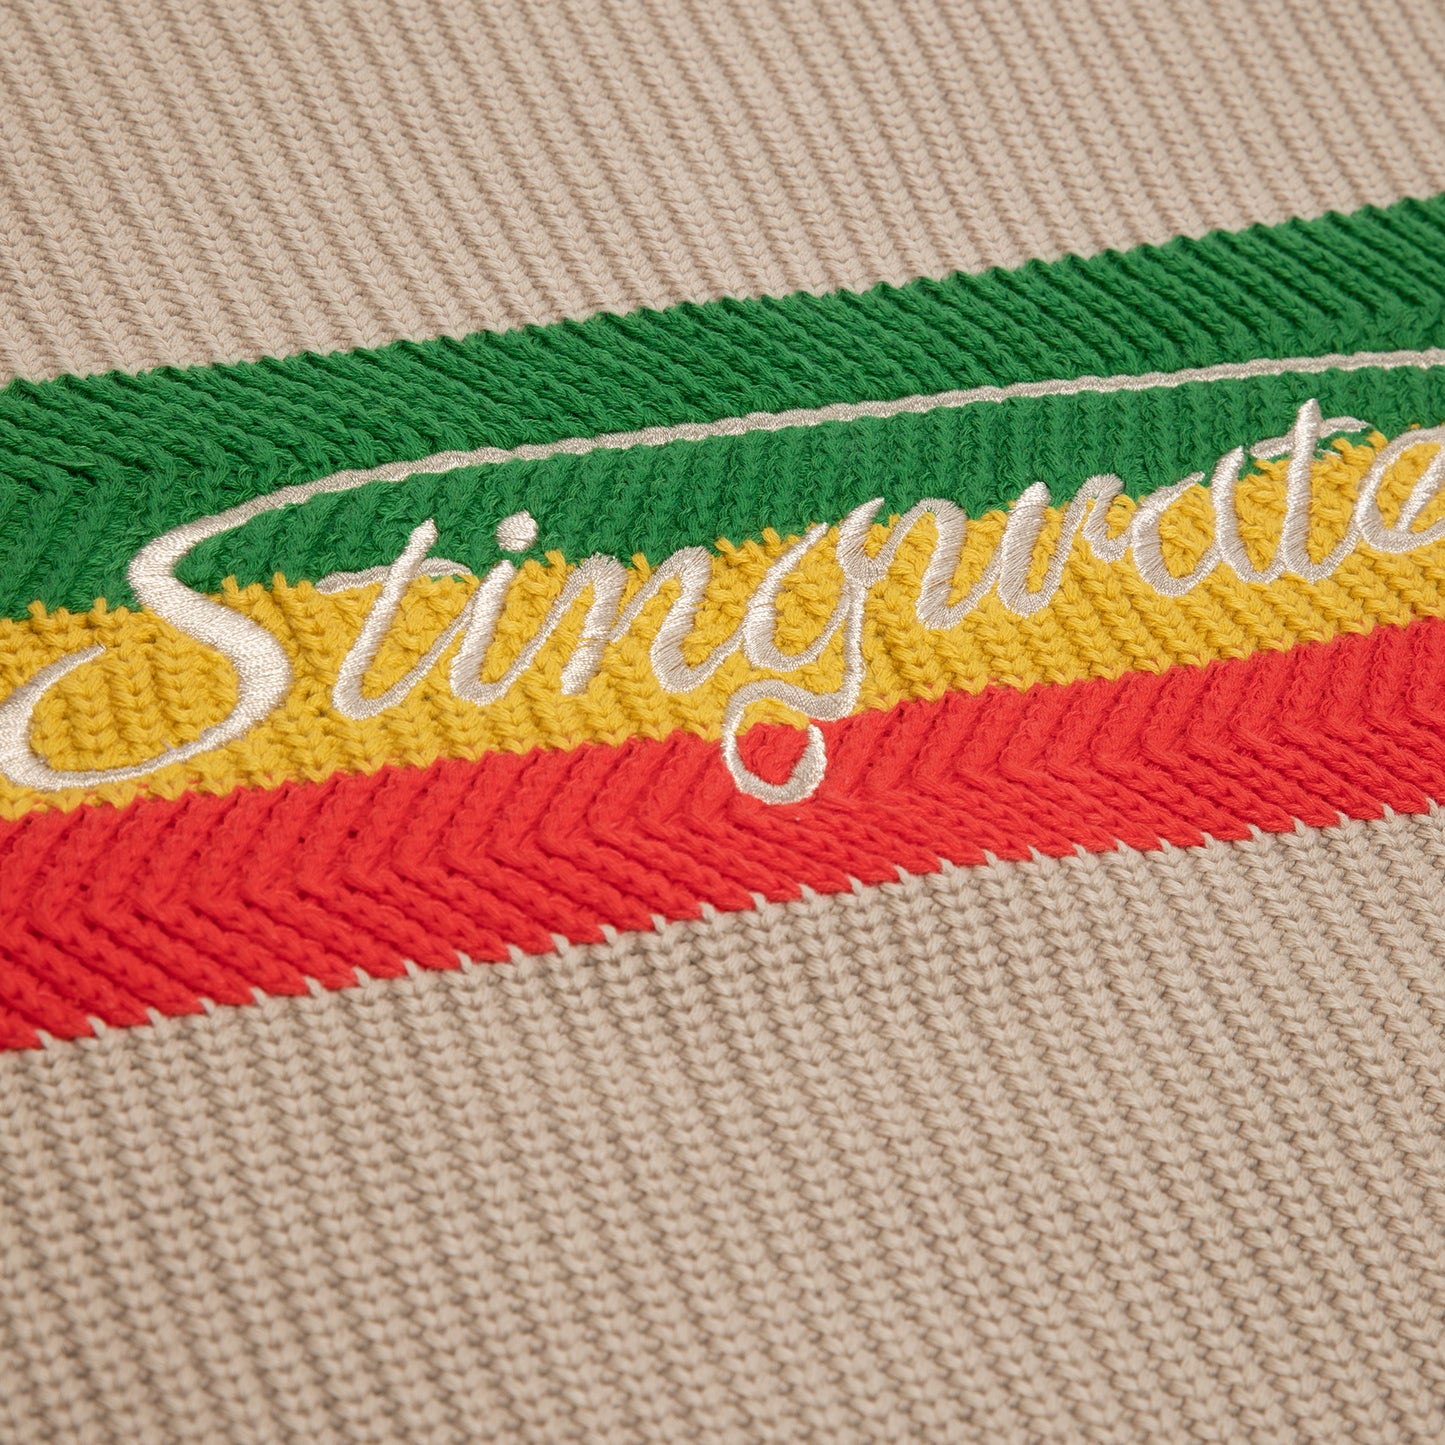 Stingwater Signature Raglan Knit Sweater (Tan)